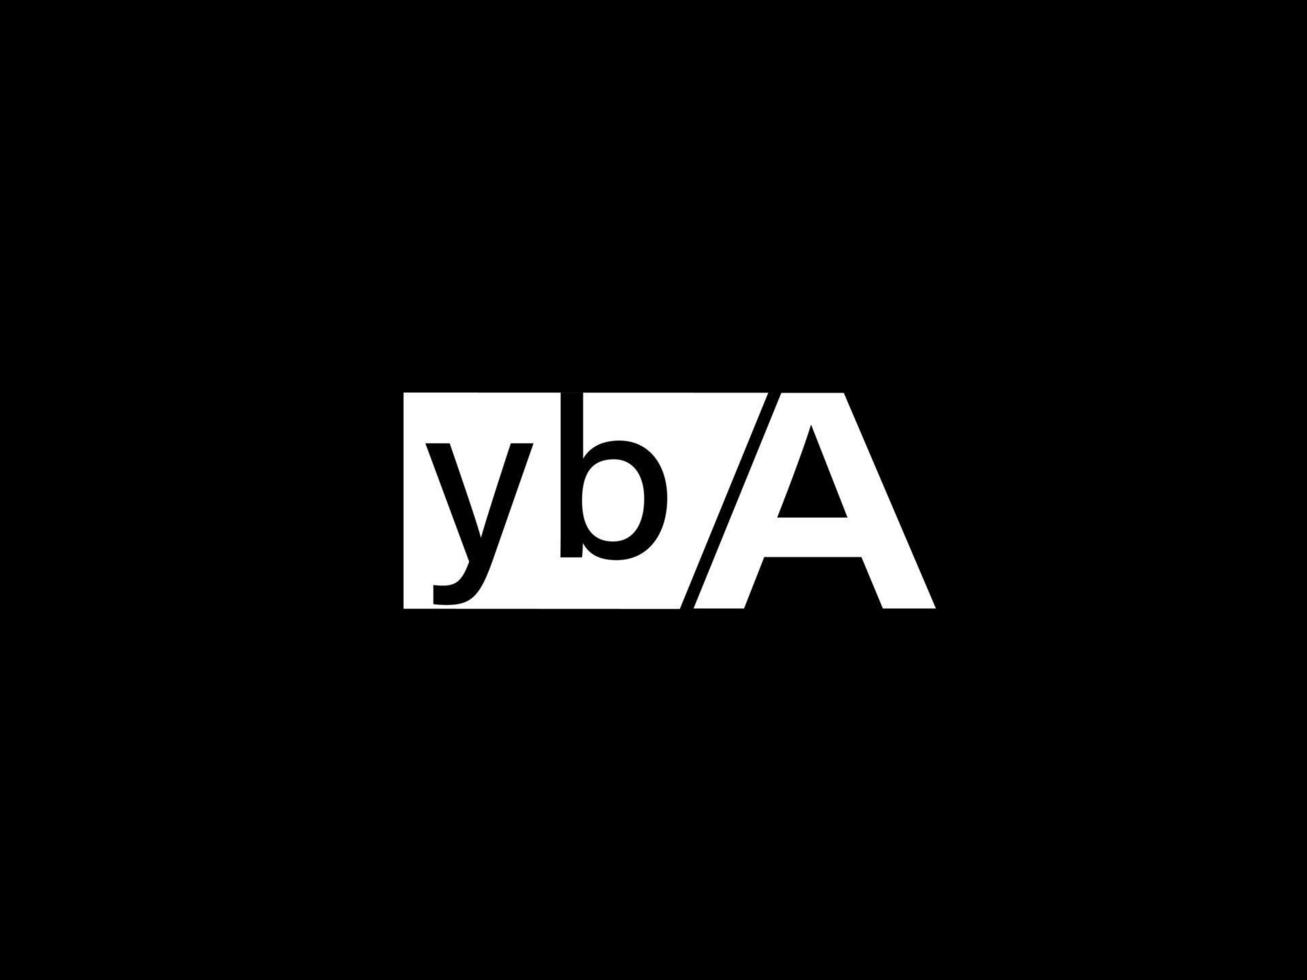 yba-Logo und Grafikdesign Vektorgrafiken, Symbole isoliert auf schwarzem Hintergrund vektor